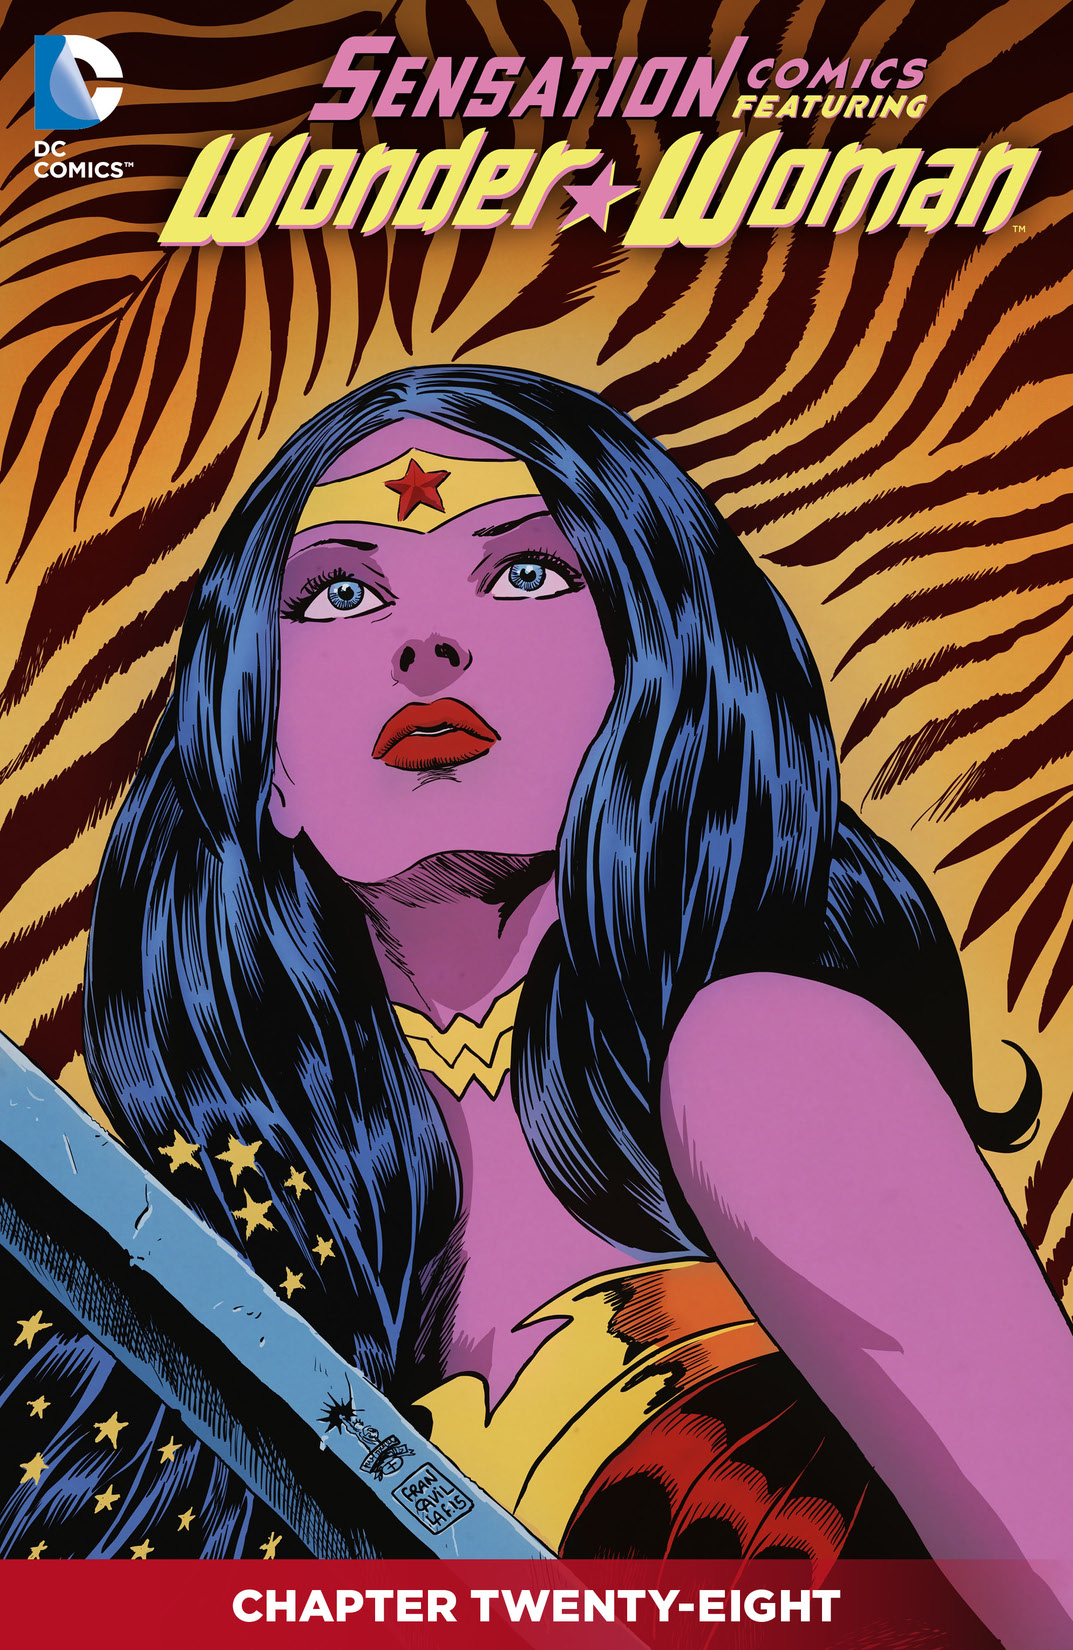 Sensation Comics Featuring Wonder Woman #28 preview images